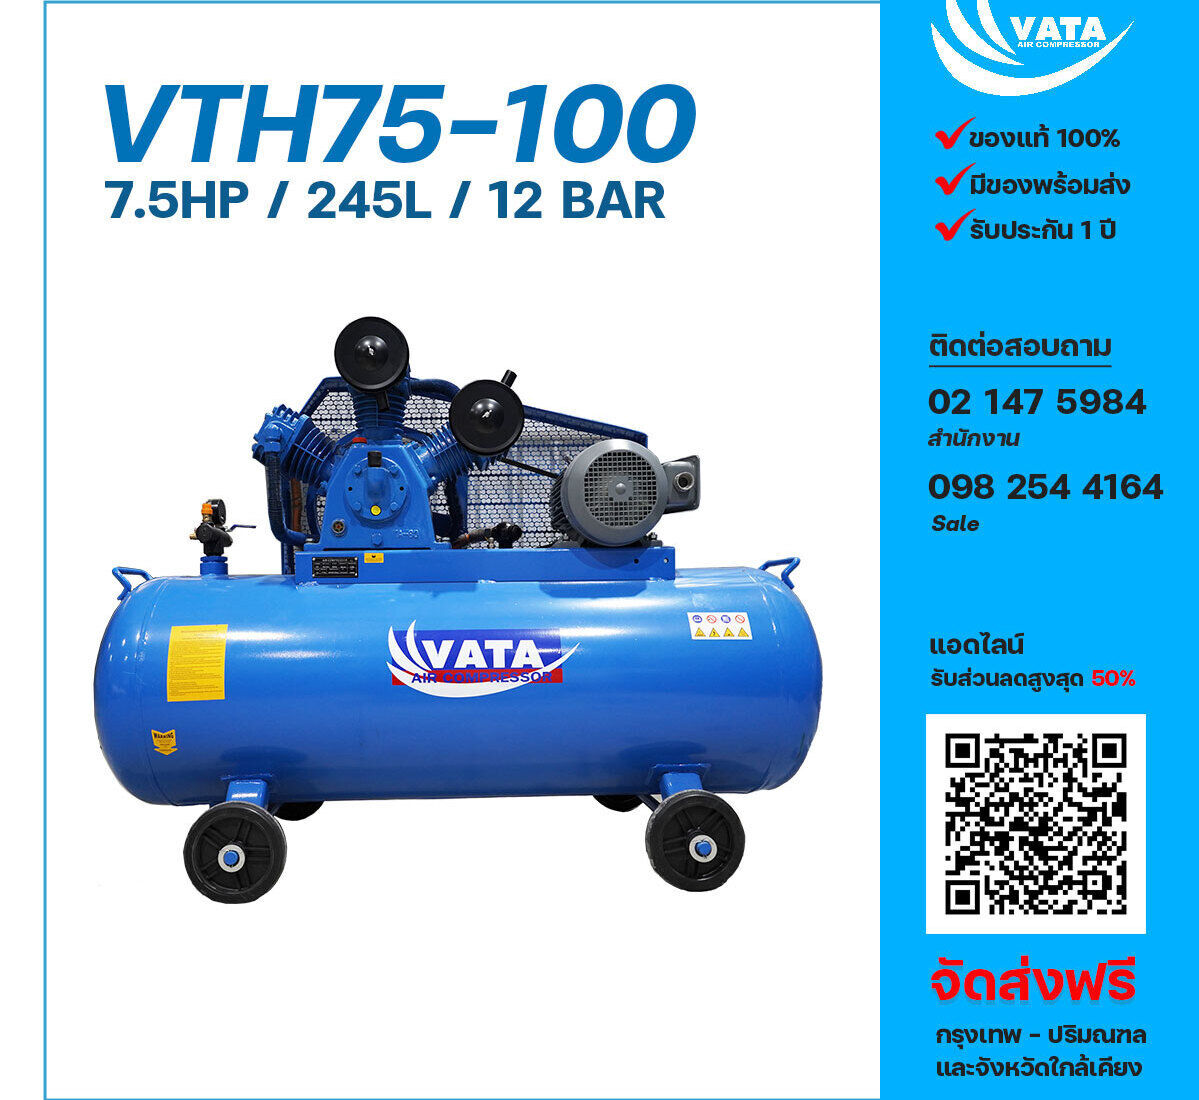 ปั๊มลมวาตะแรงดันสูง VATA Two-Stage VTH75-100 380V ปั๊มลมลูกสูบ ขนาด 3 สูบ 7.5 แรงม้า 245 ลิตร VATA พร้อมมอเตอร์ ไฟ 380V ส่งฟรี กรุงเทพฯ-ปริมณฑล รับประกัน 1 ปี